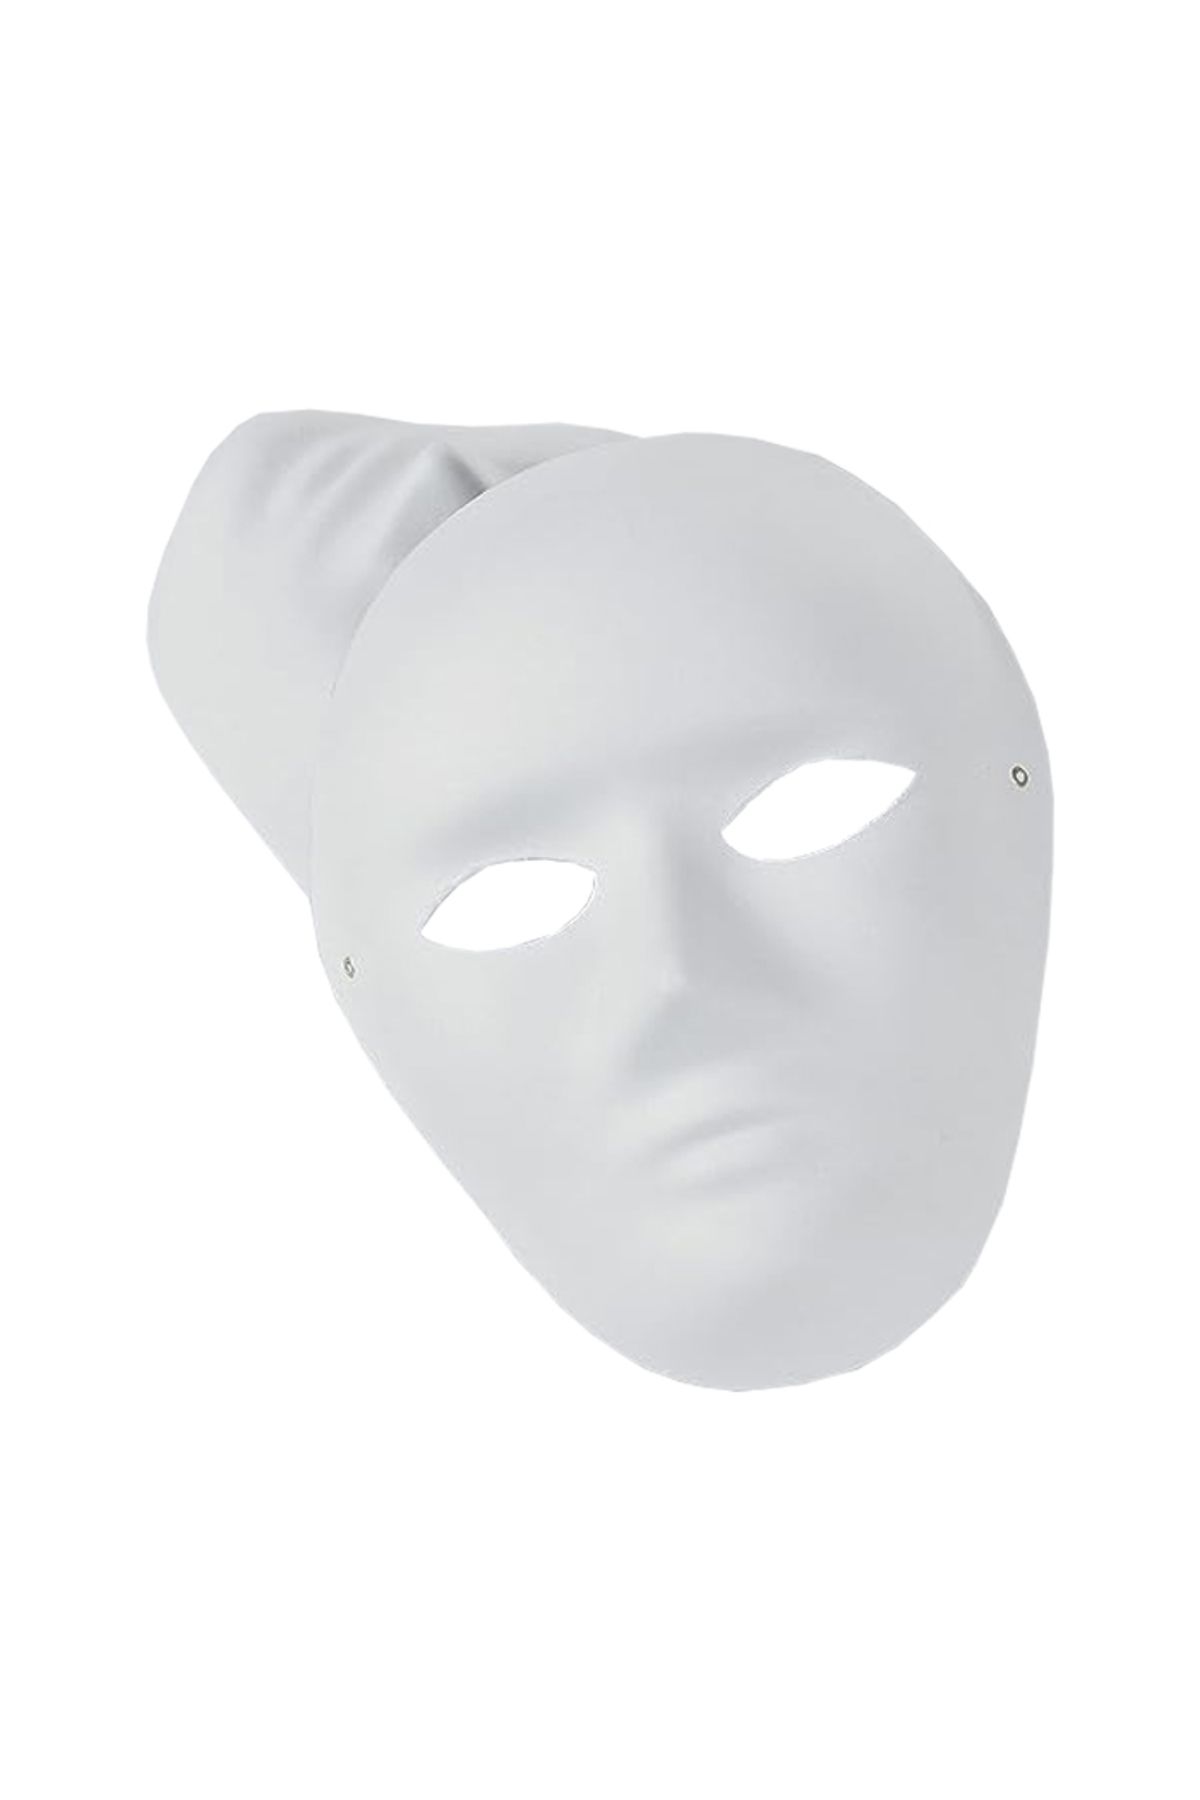 Rubenis Boyanabilir Büyük Karton Yüz Maske 19x24cm – 25 Adet